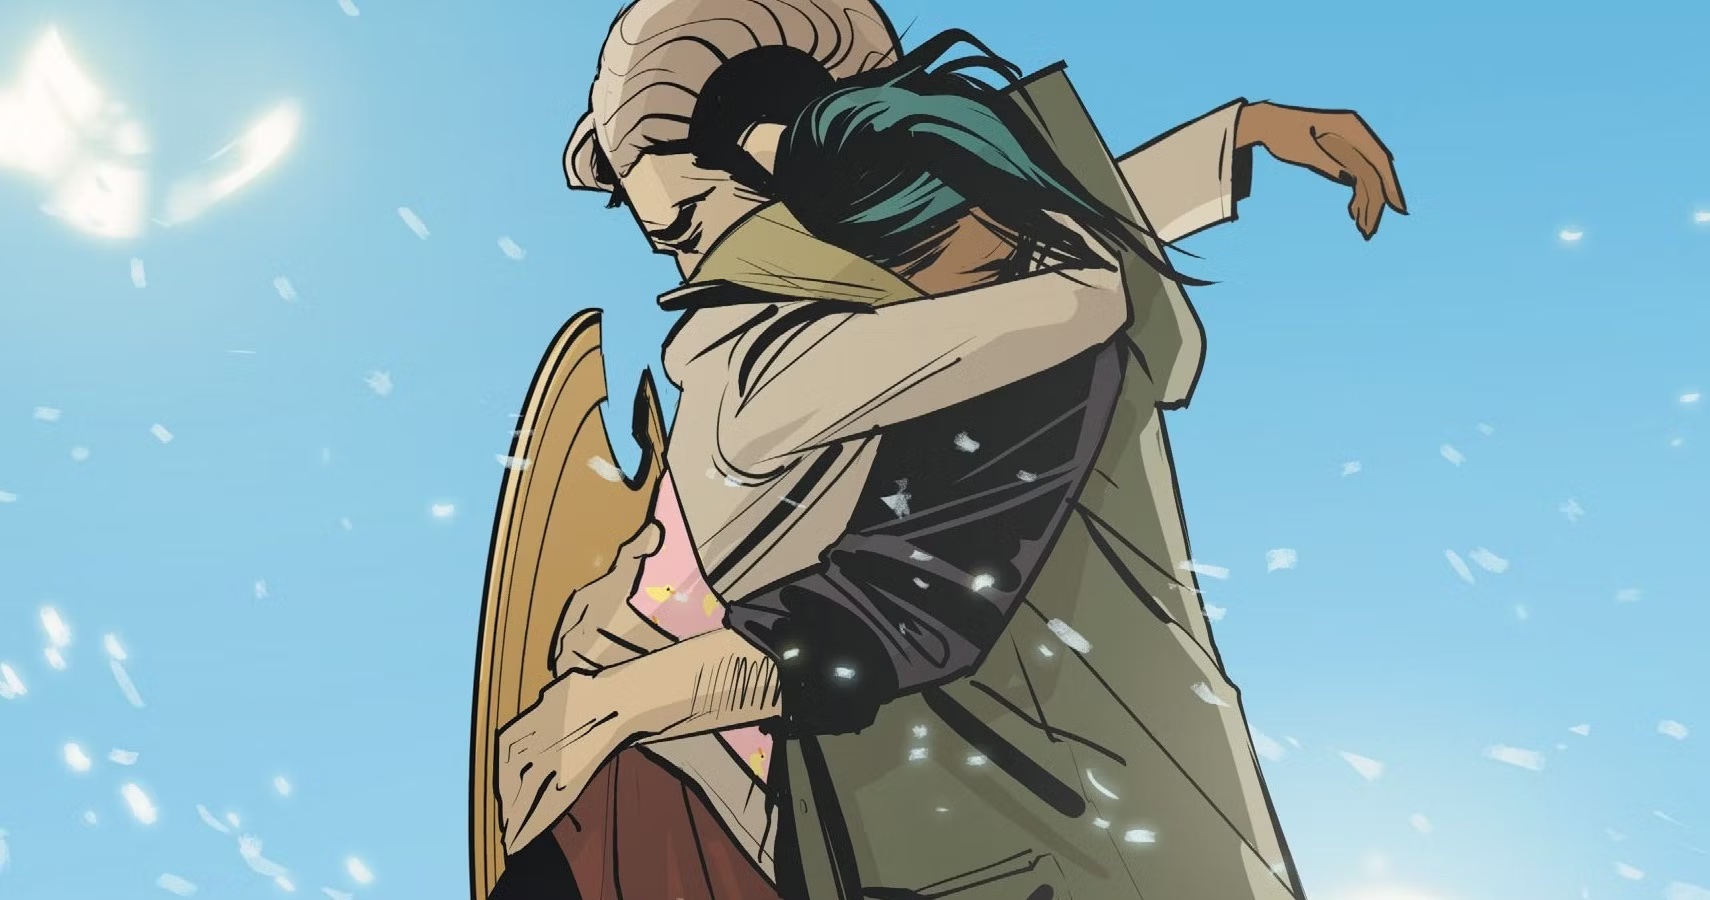 Image extraite du comics Saga montrant deux personnages enlacés dans un instant d'émotions. L'un a des cornes, l'autre a des ailes.